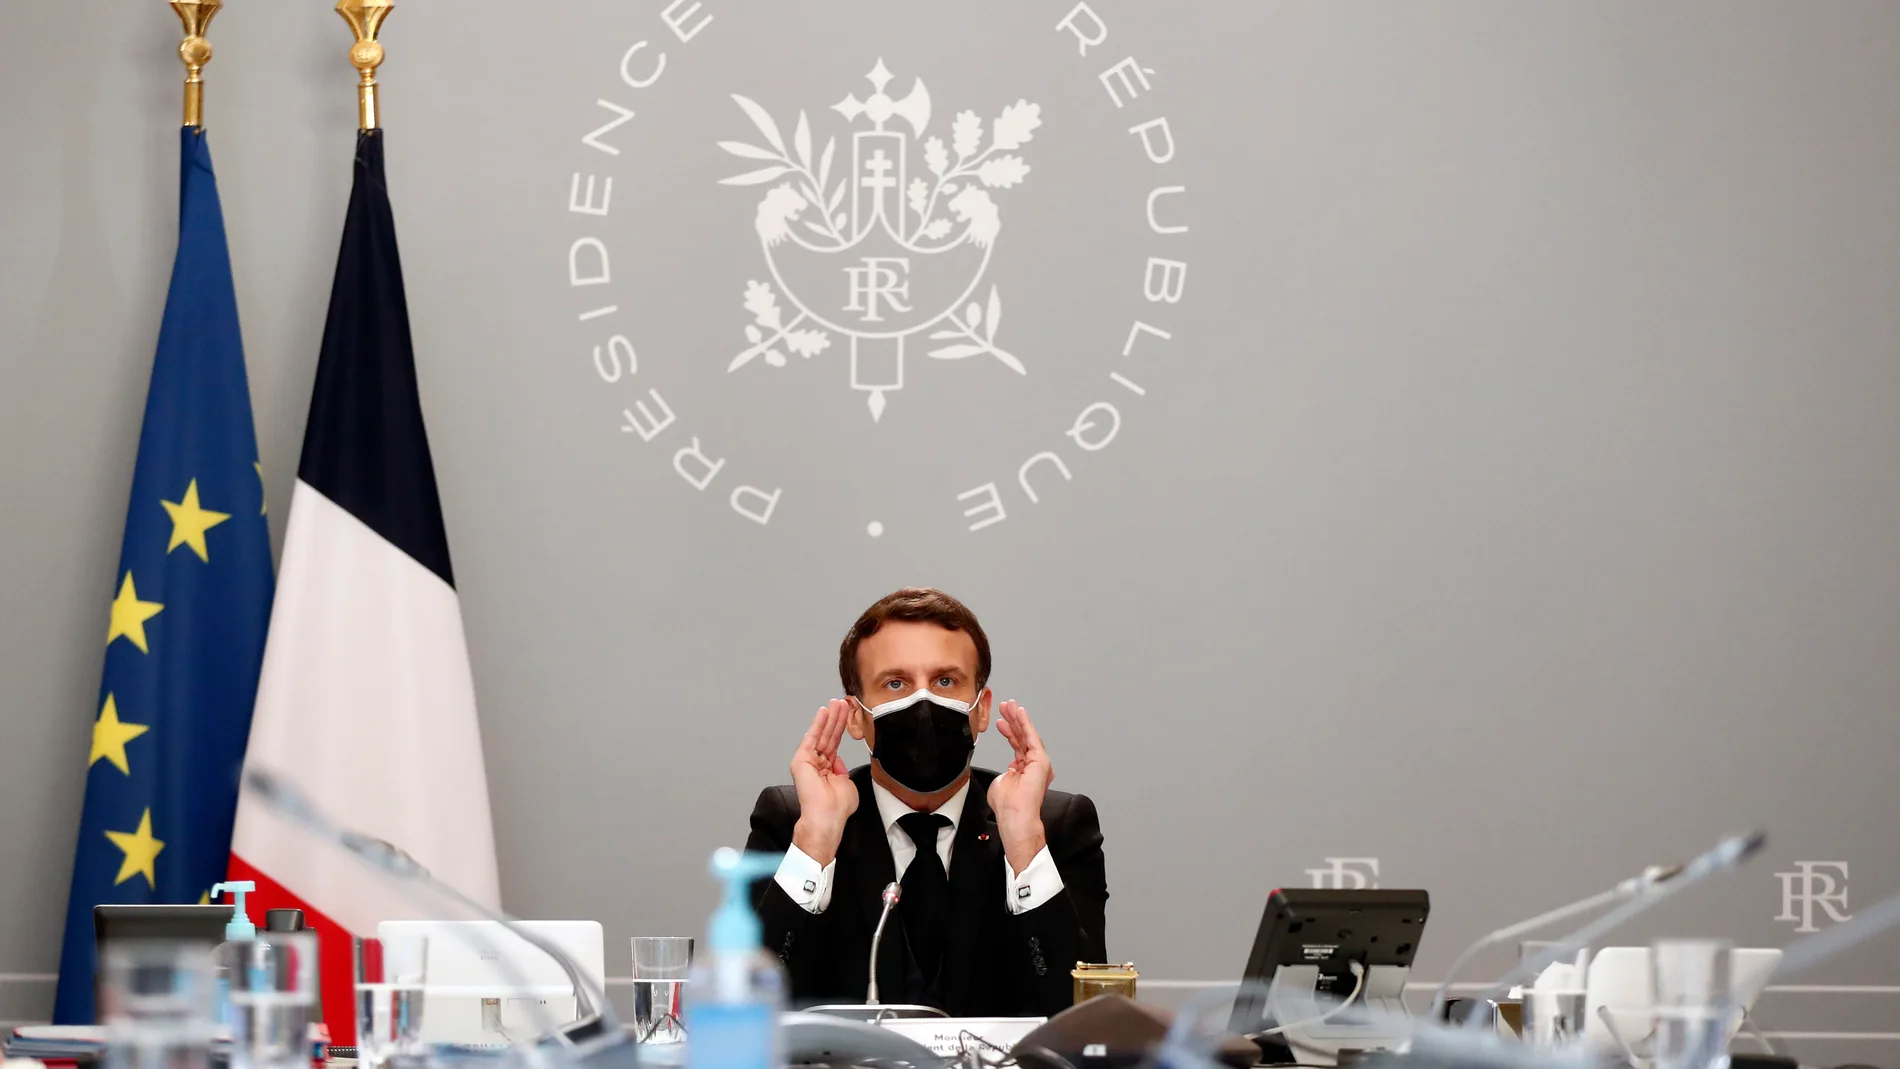 El presidente de Francia Emmanuel Macron